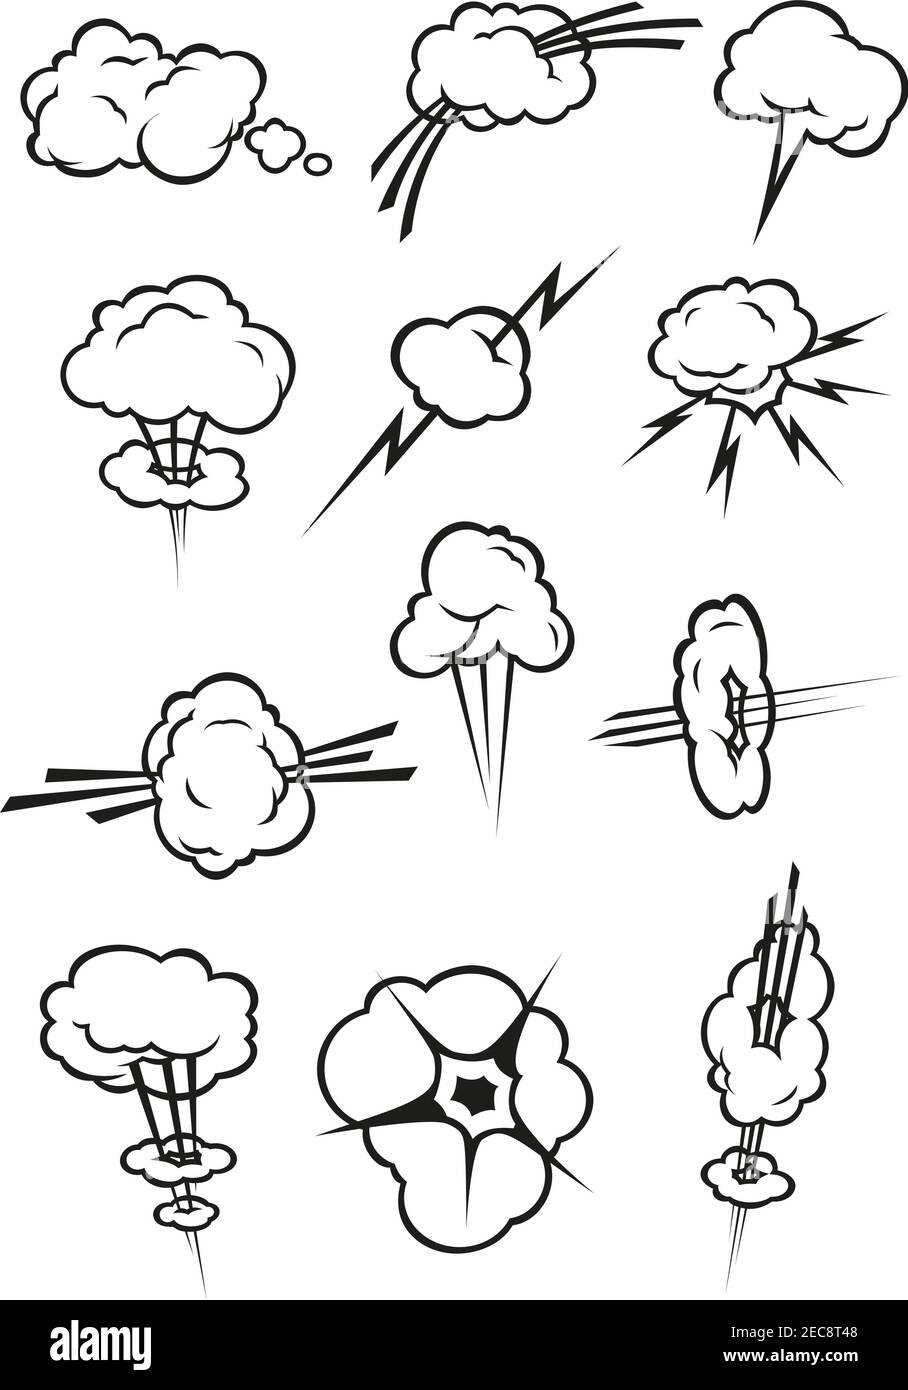 Cloud-Symbole im Comic-Stil. Isolierte Cumuluswolken umreißen in verschiedenen Formen und Formen von Rauchschwamm, Dampfdampf, Rauch, Explosion, thun Stock Vektor